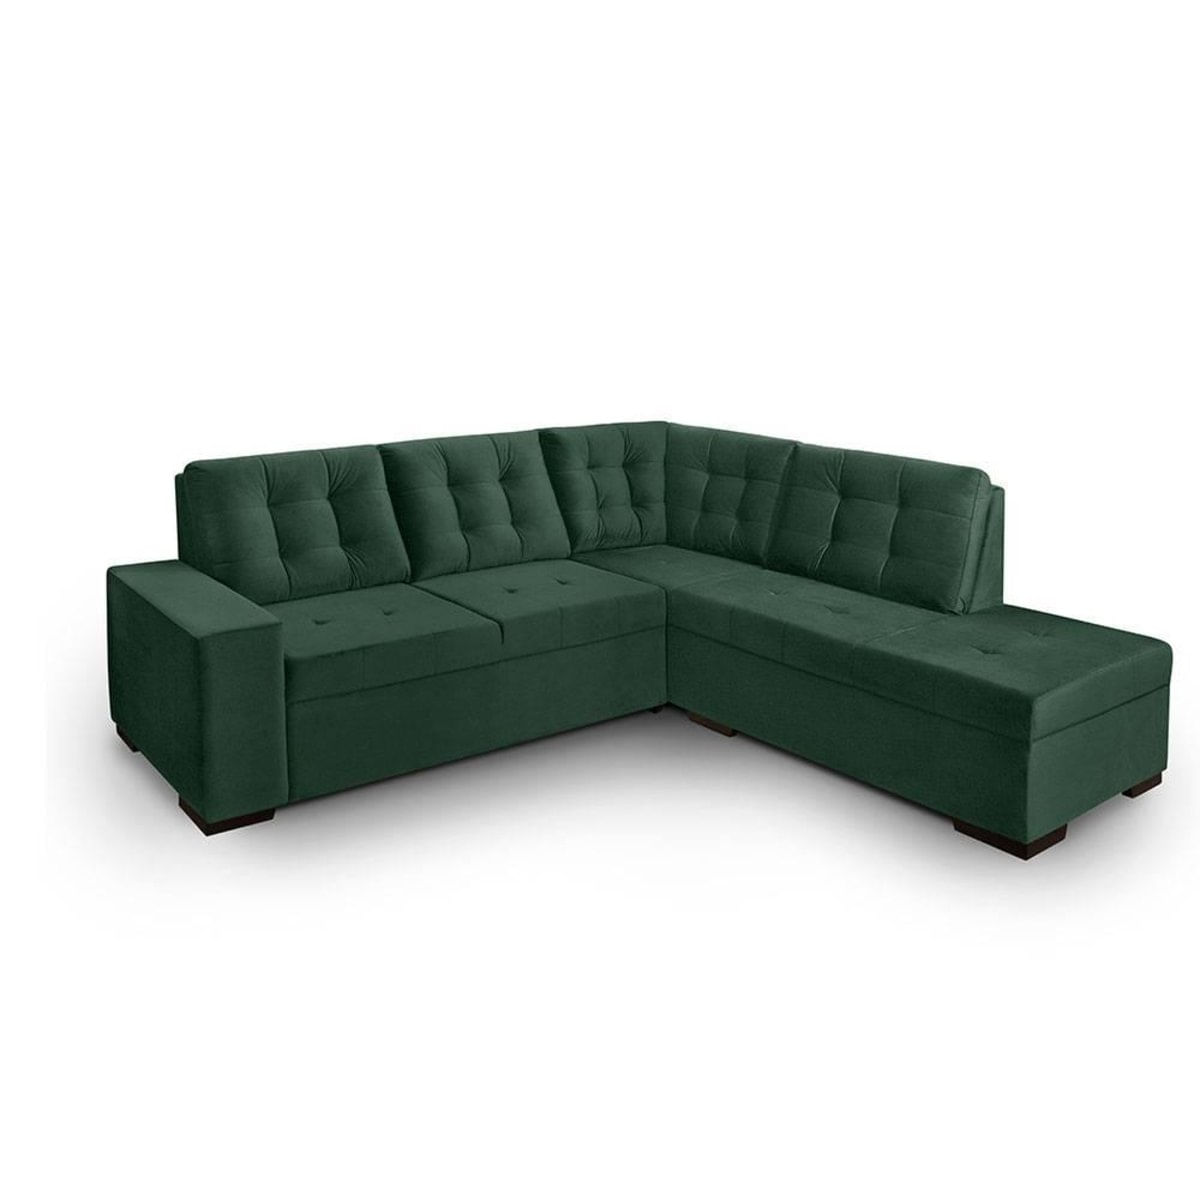 Sofa de canto com chaise Roma Verde A90 - Carrefour - Carrefour